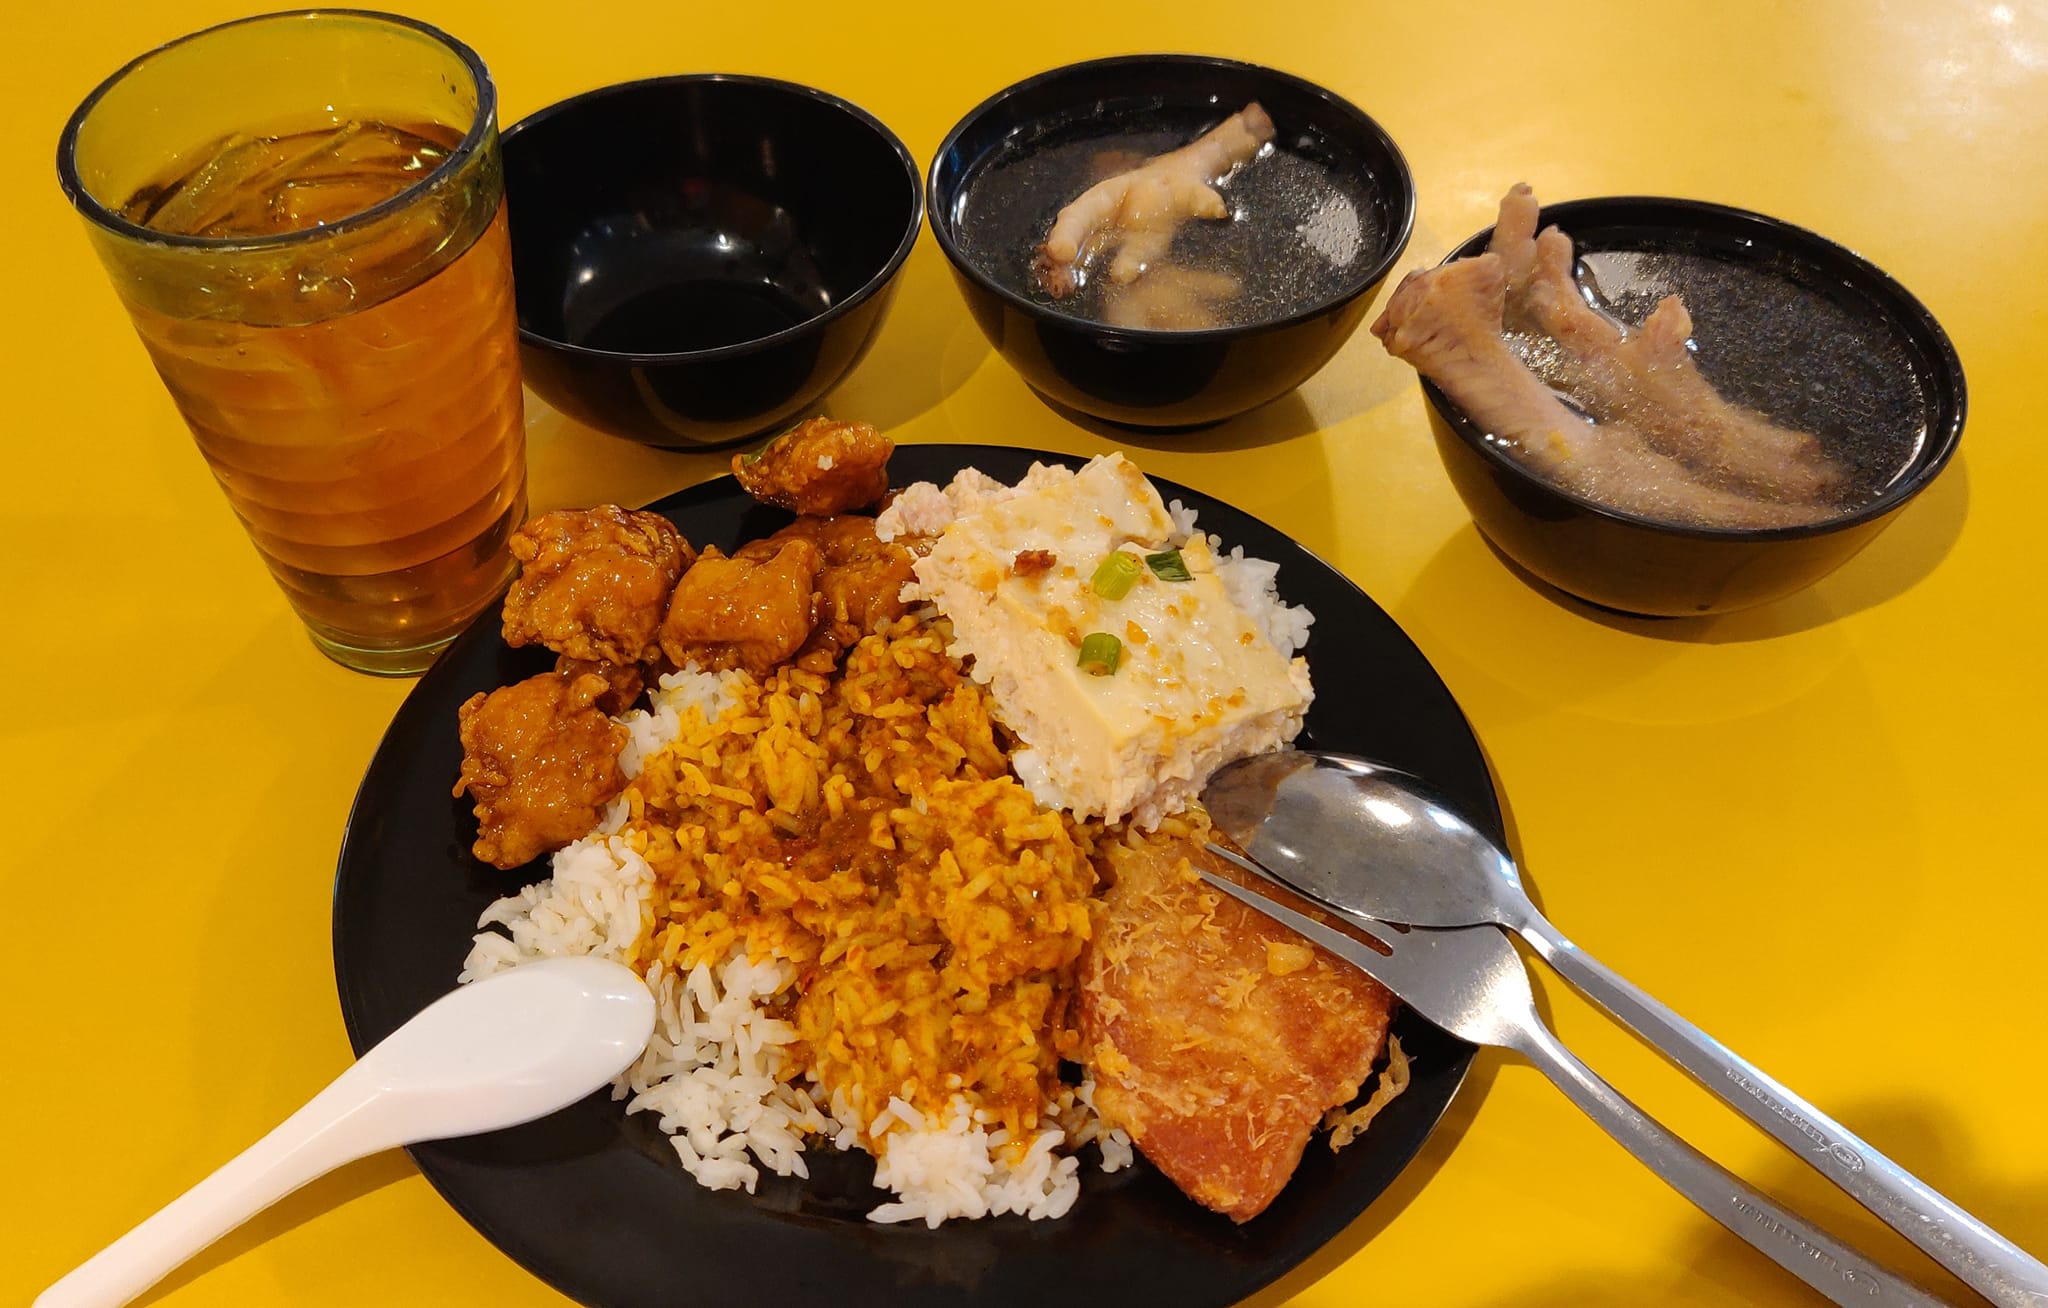 Restoran 2 in 1 Subang Jaya Economy Rice